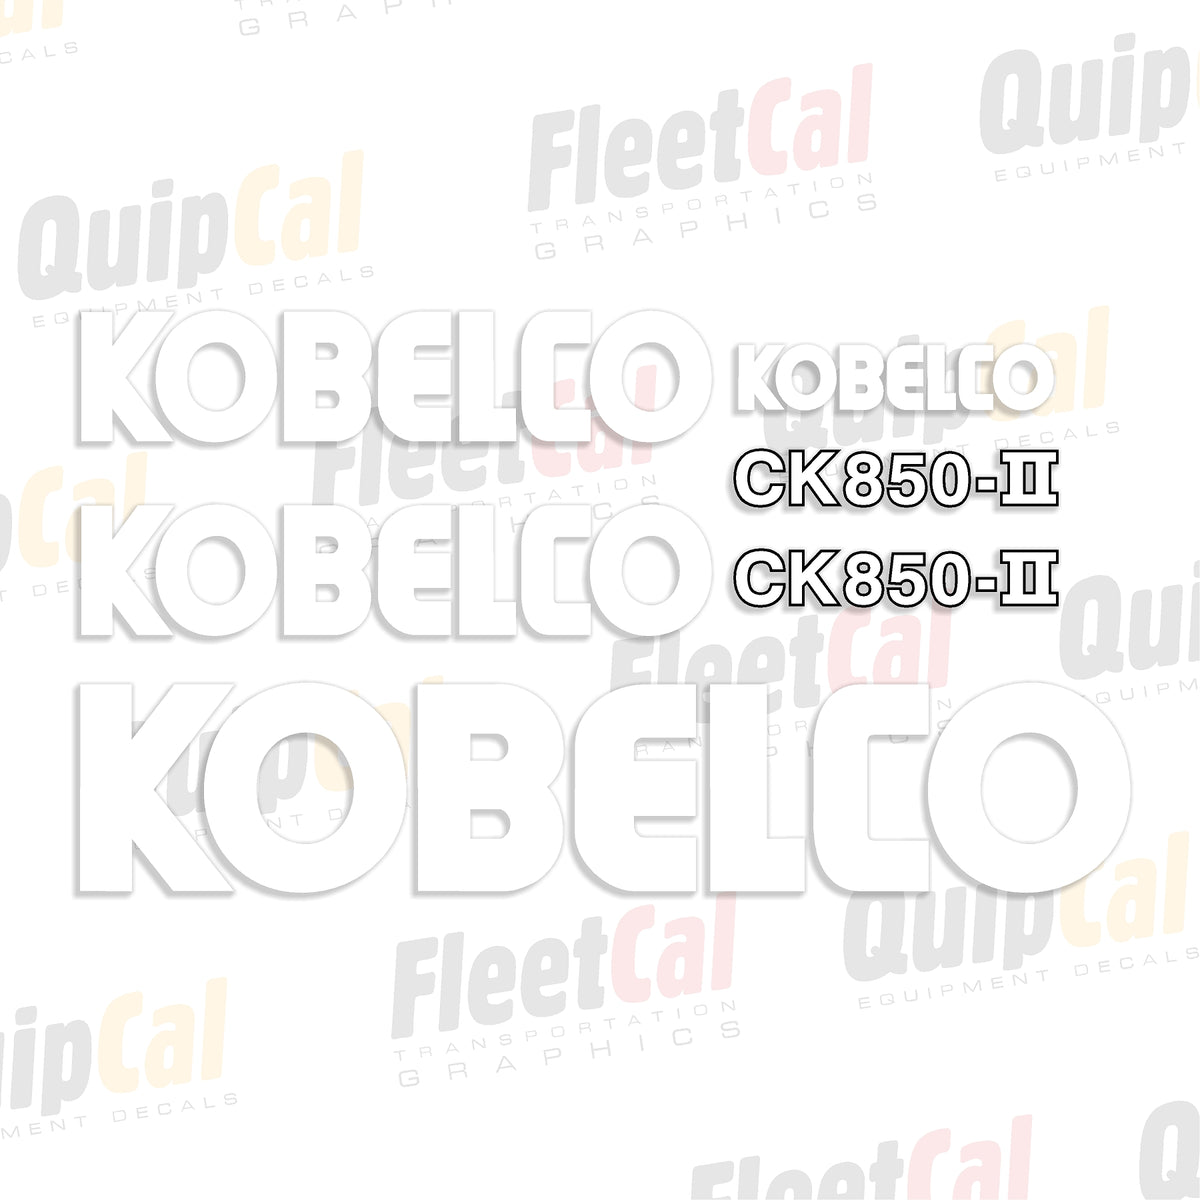 Kobelco Crane Decal Set